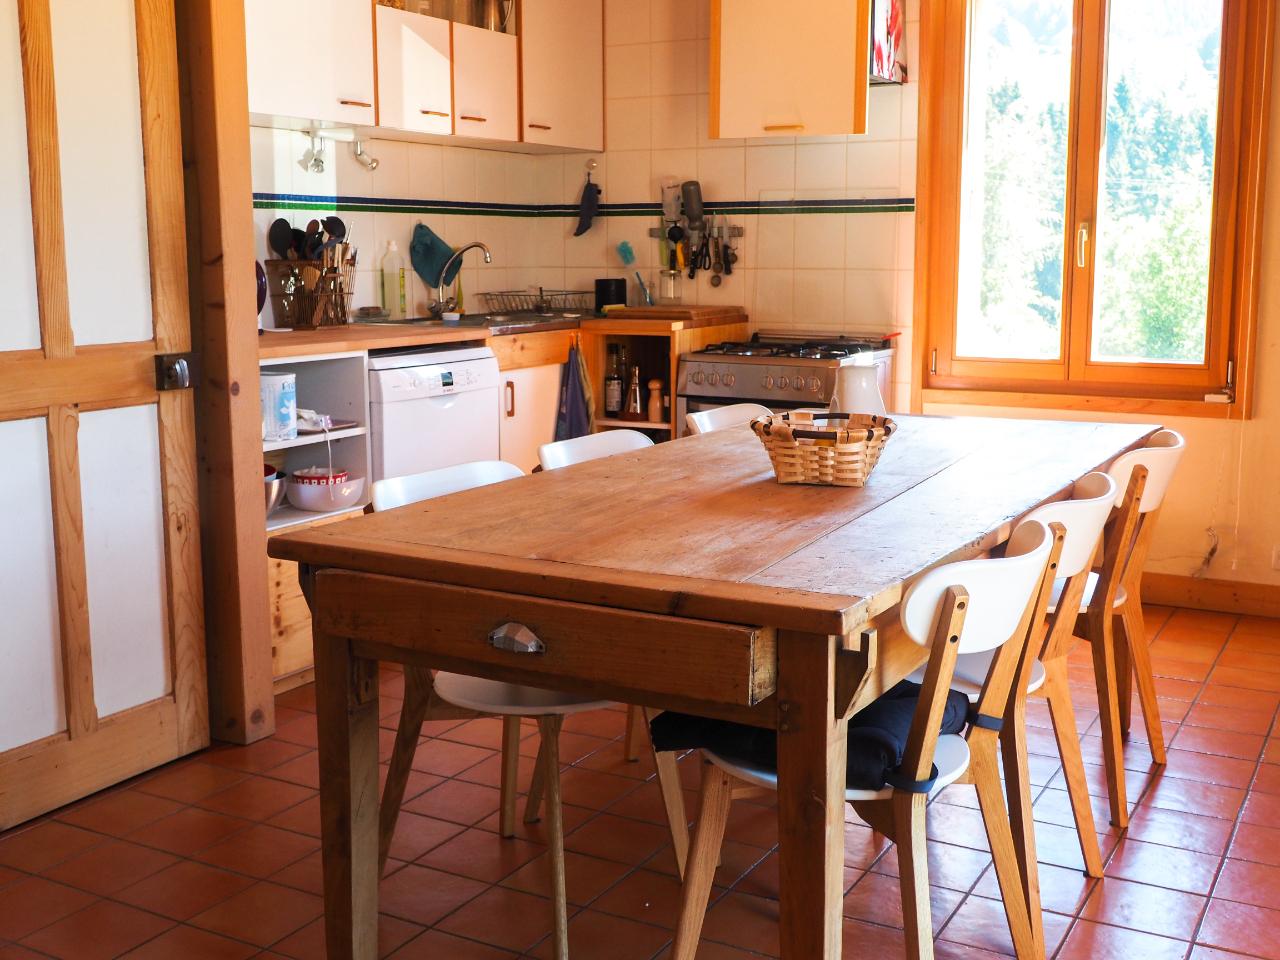 Hôte GreenGo: Maison esprit chalet en Chartreuse (avec chat) - Image 7